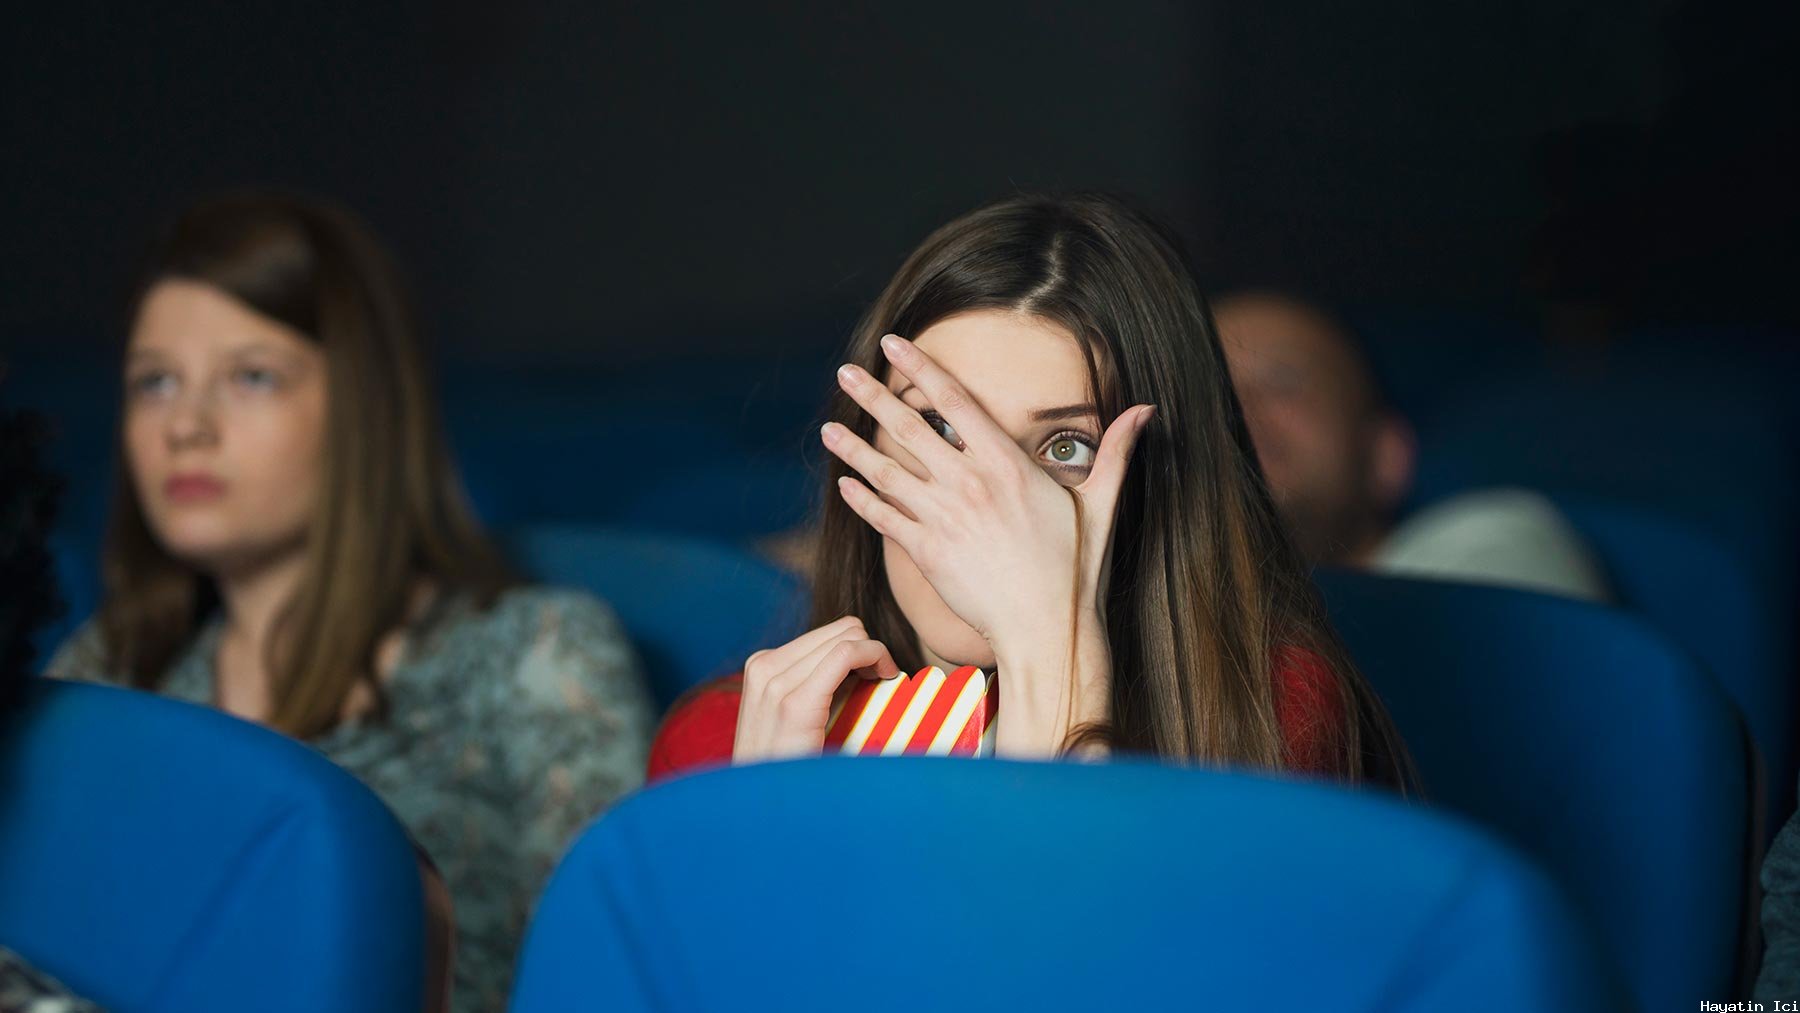 Çığlık Terapisi: Korku Filmlerinin Akıl Sağlığına Faydaları